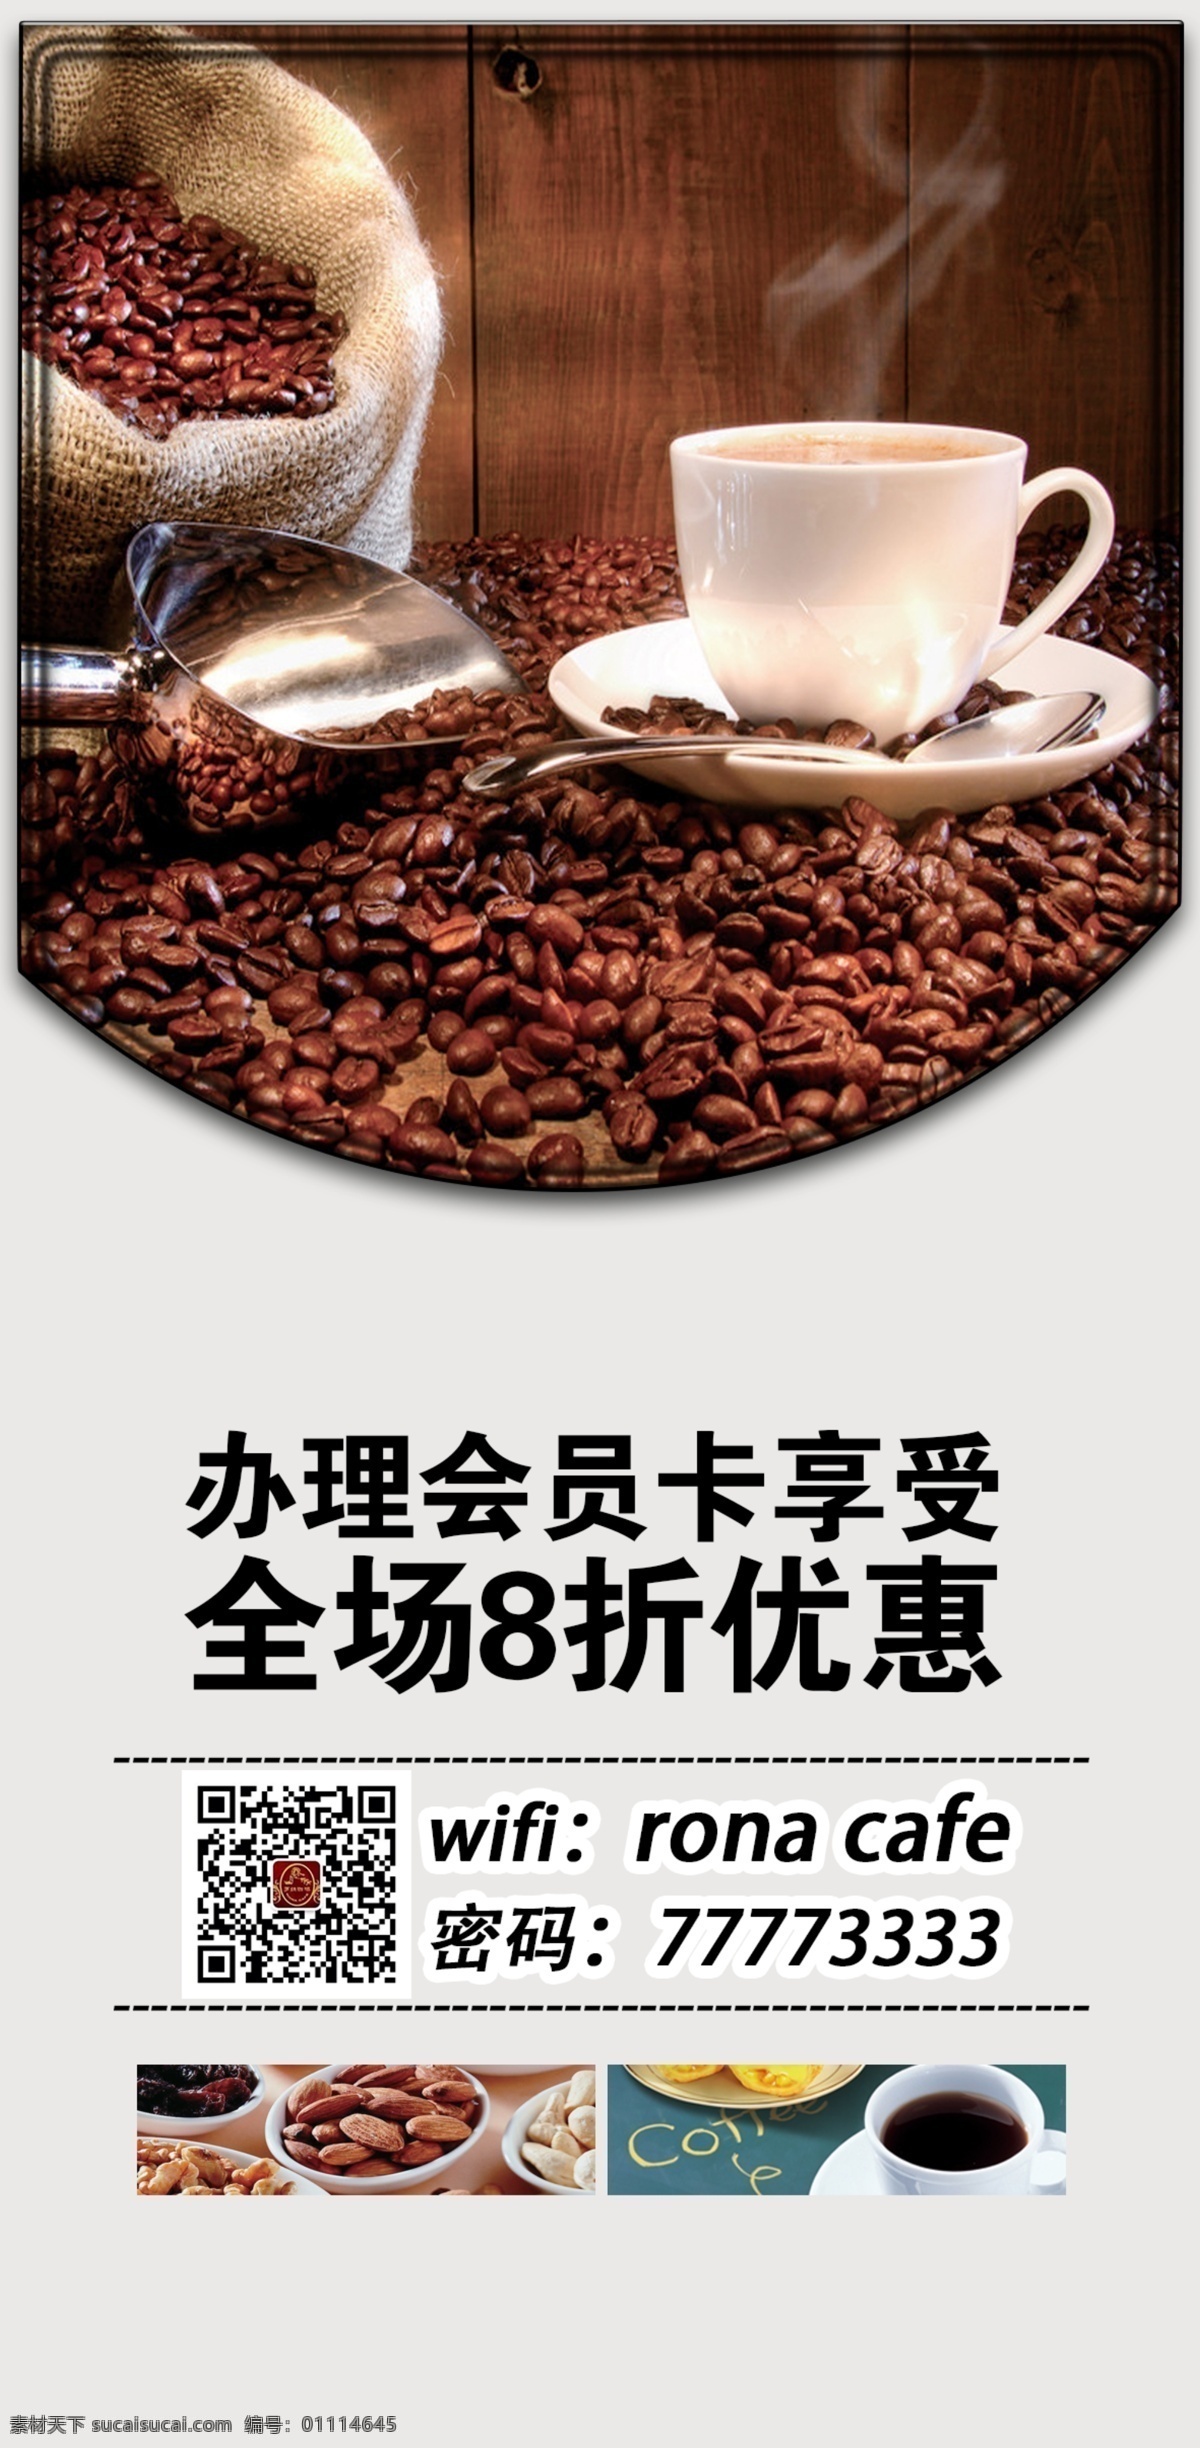 咖啡店台卡 咖啡 咖啡粉 咖啡渣 咖啡店广告 平面设计 咖啡文化 咖啡海报